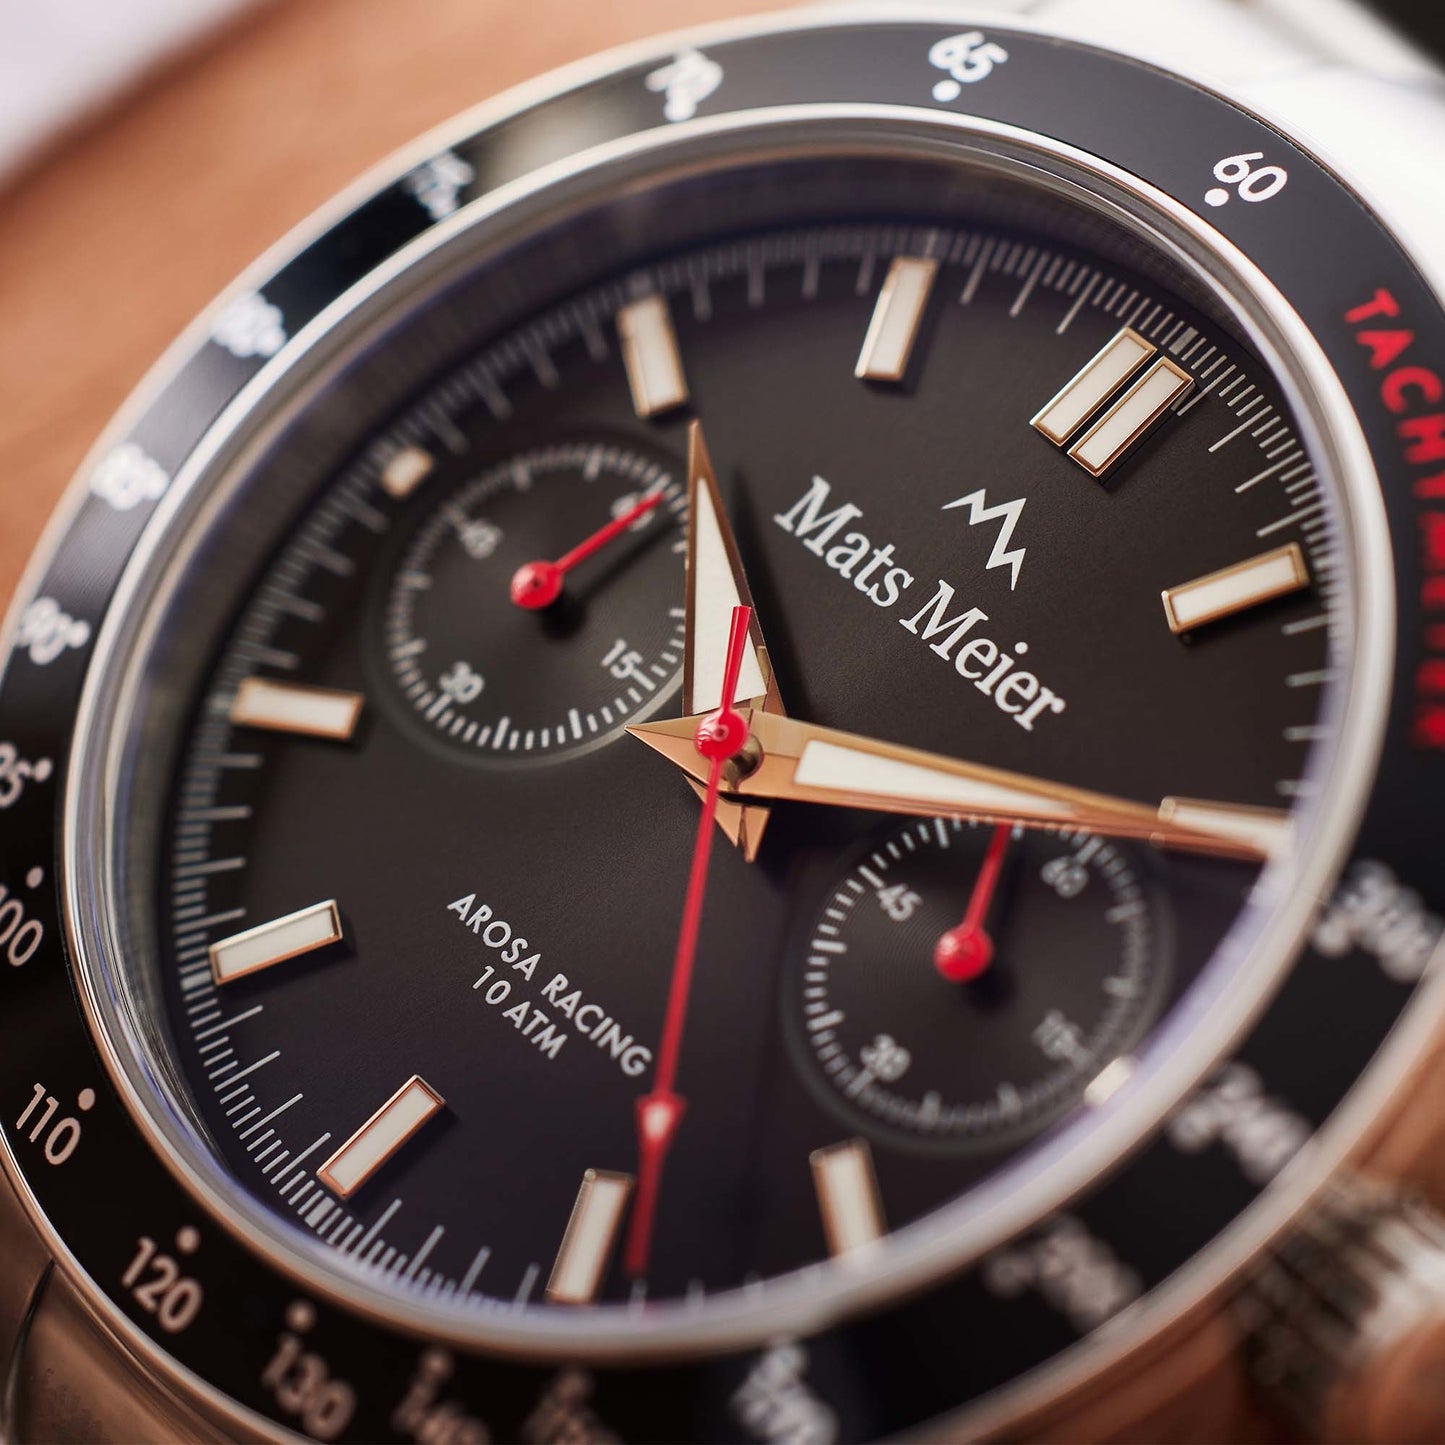 Arosa Racing cronografo orologio da uomo color argento e nero